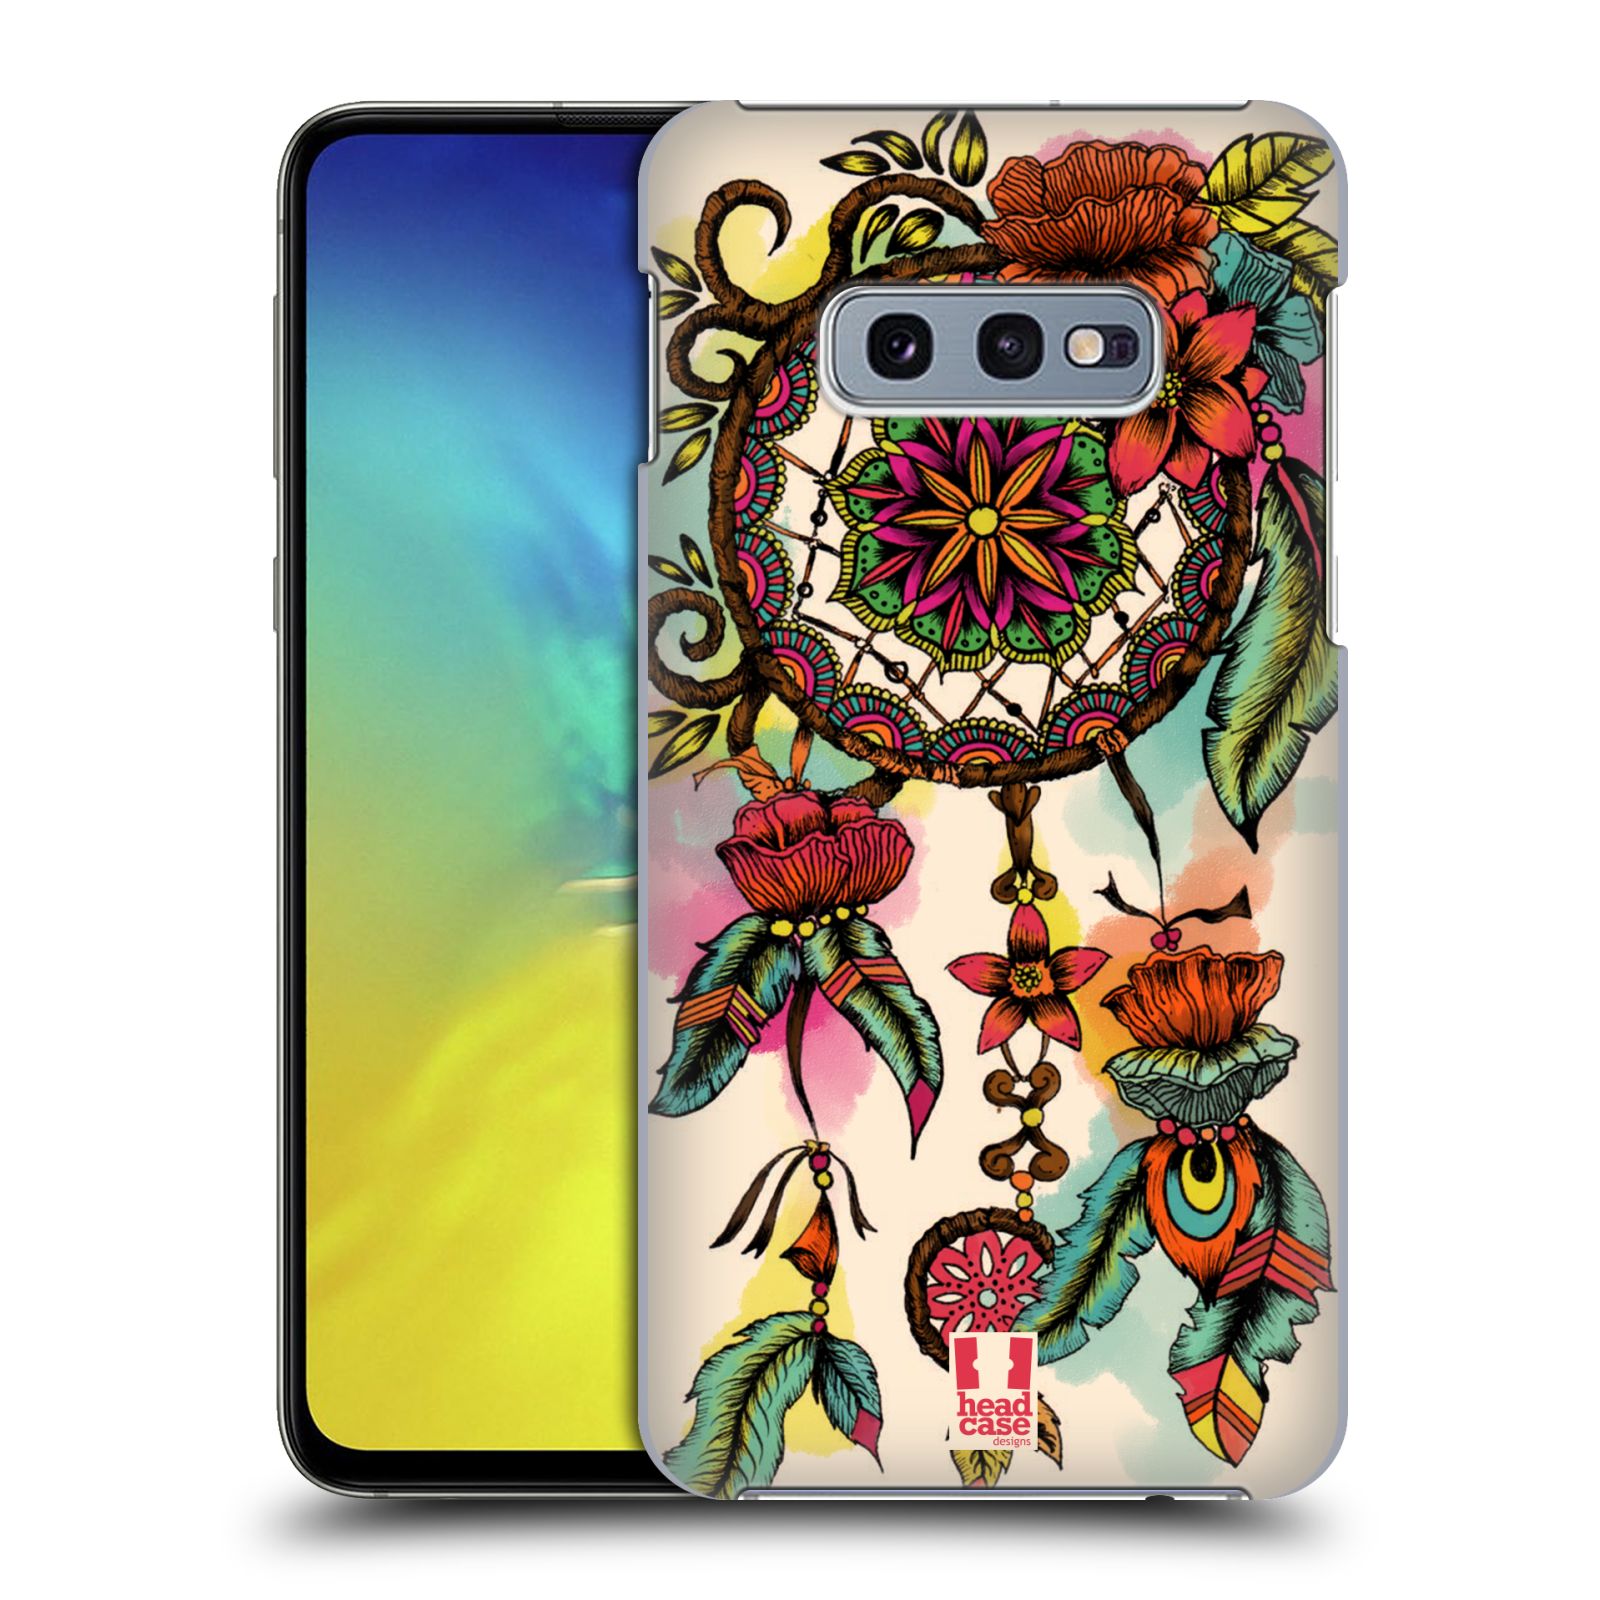 Pouzdro na mobil Samsung Galaxy S10e - HEAD CASE - vzor Květy lapač snů FLORID